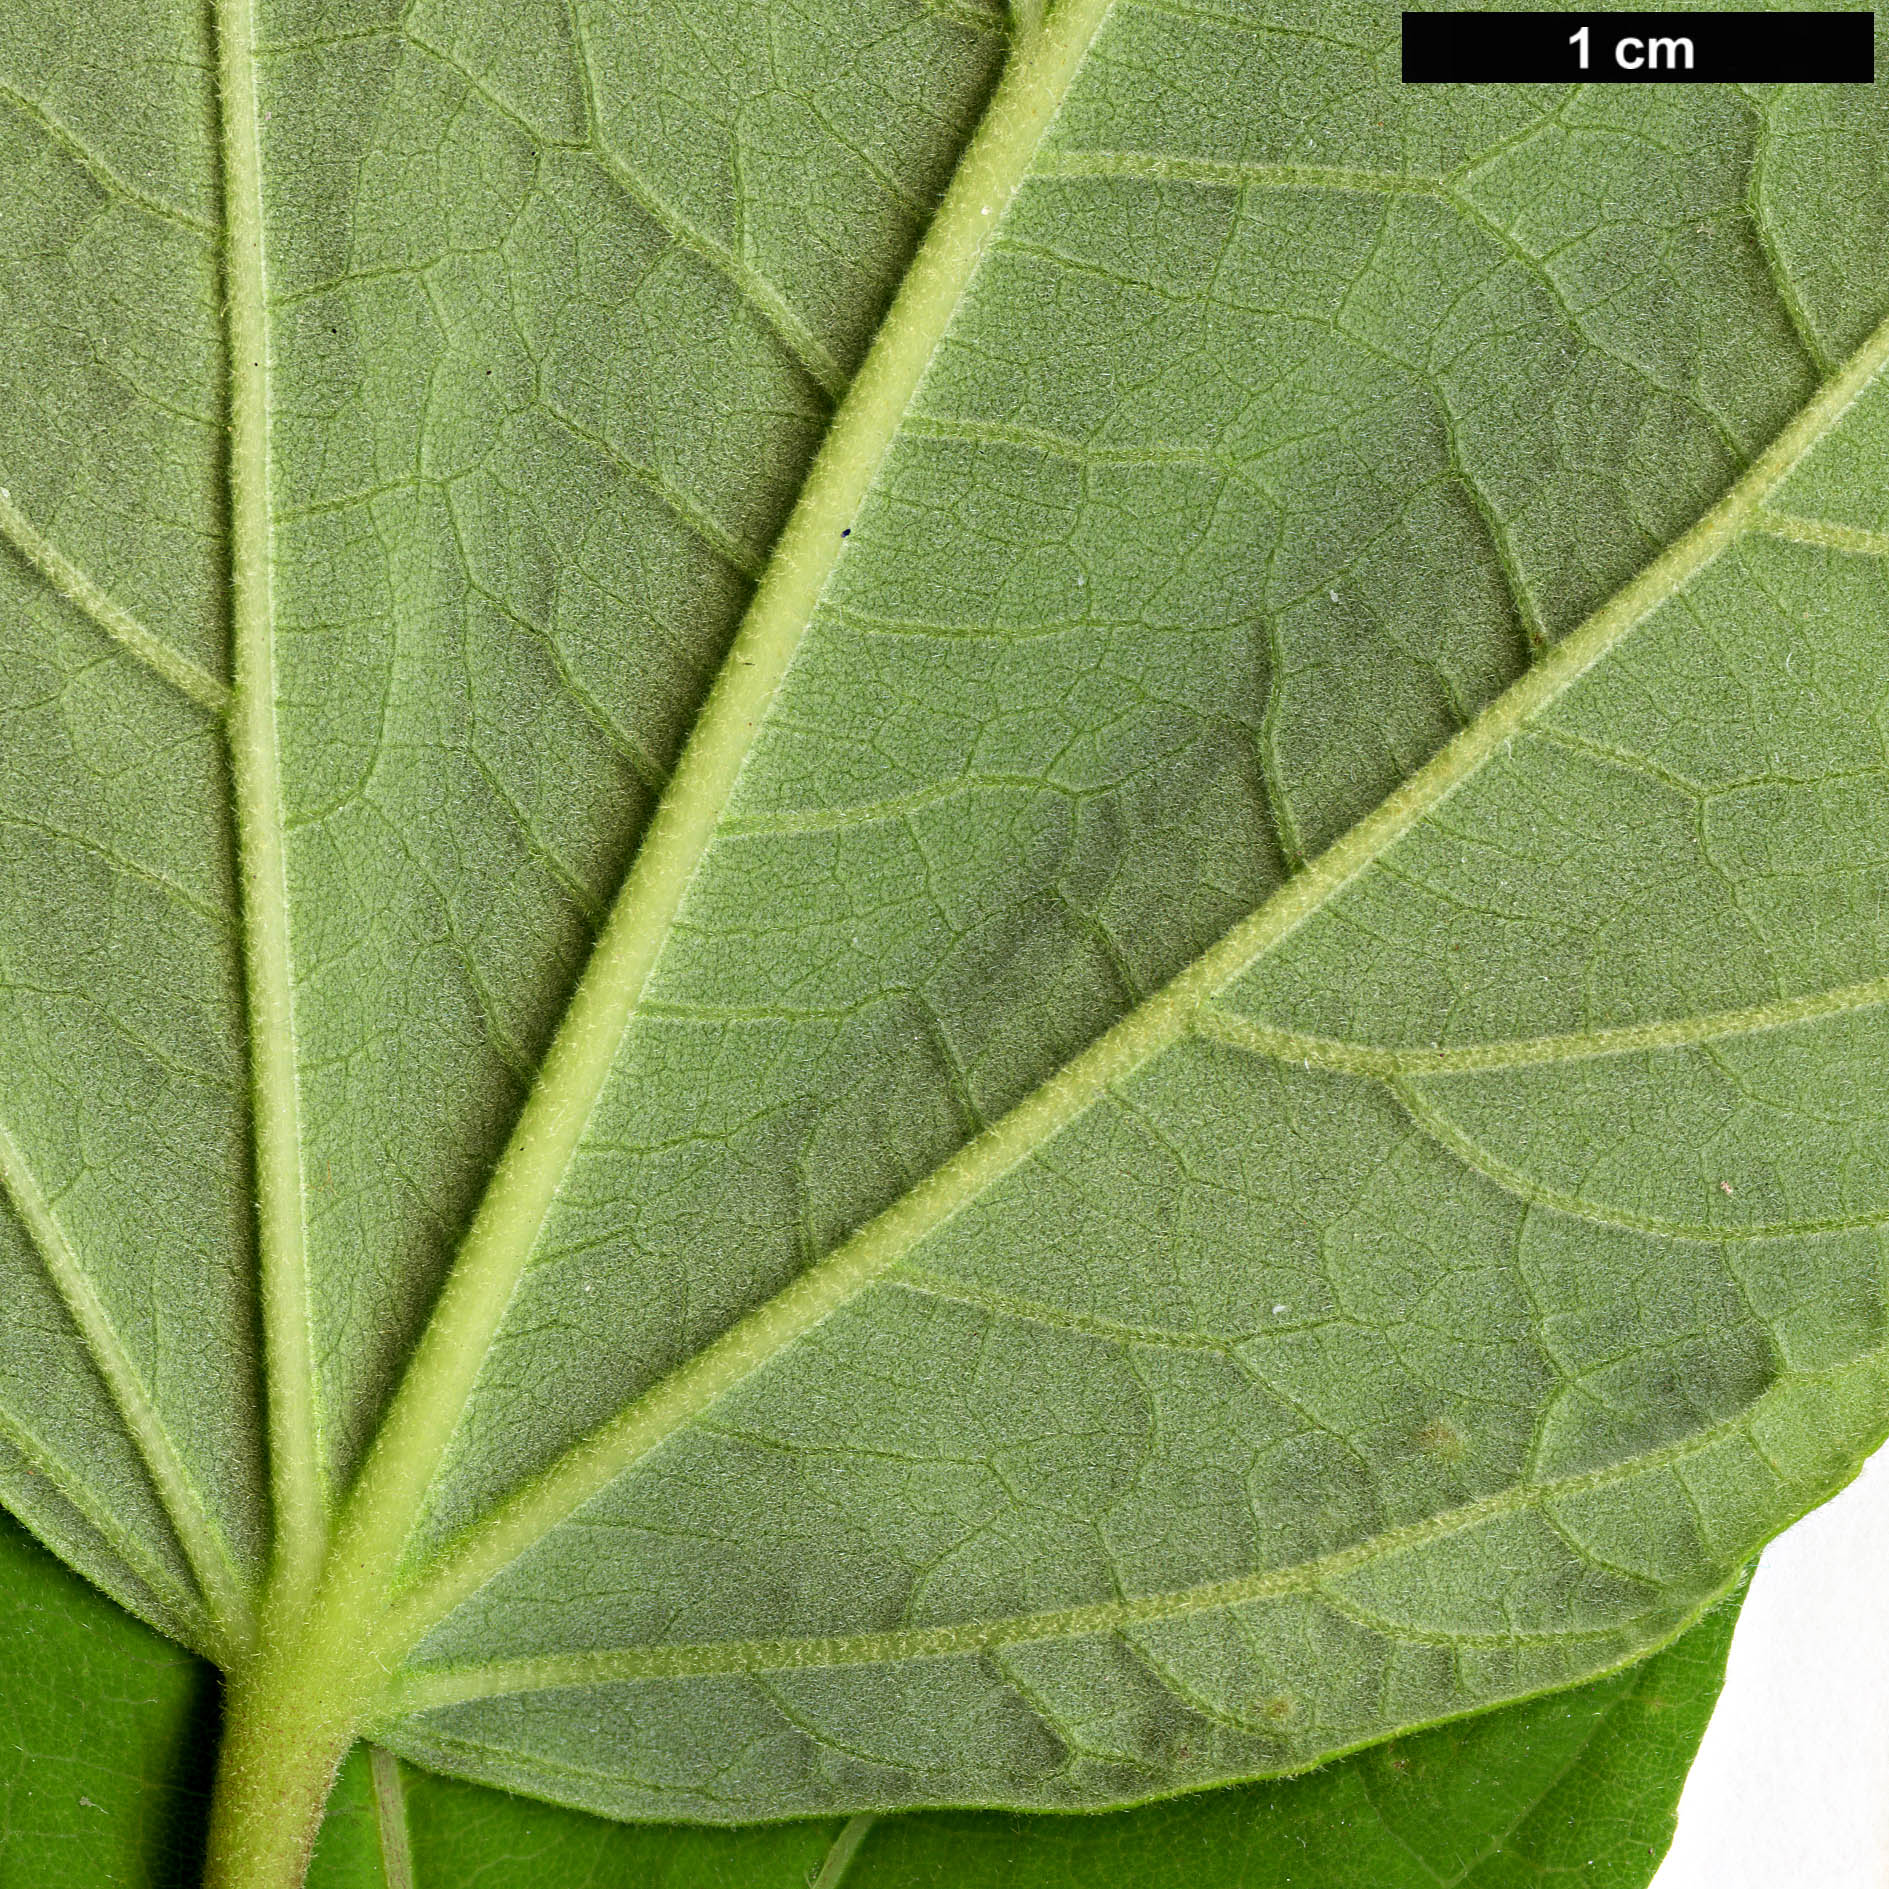 High resolution image: Family: Malvaceae - Genus: Hibiscus - Taxon: moscheutos